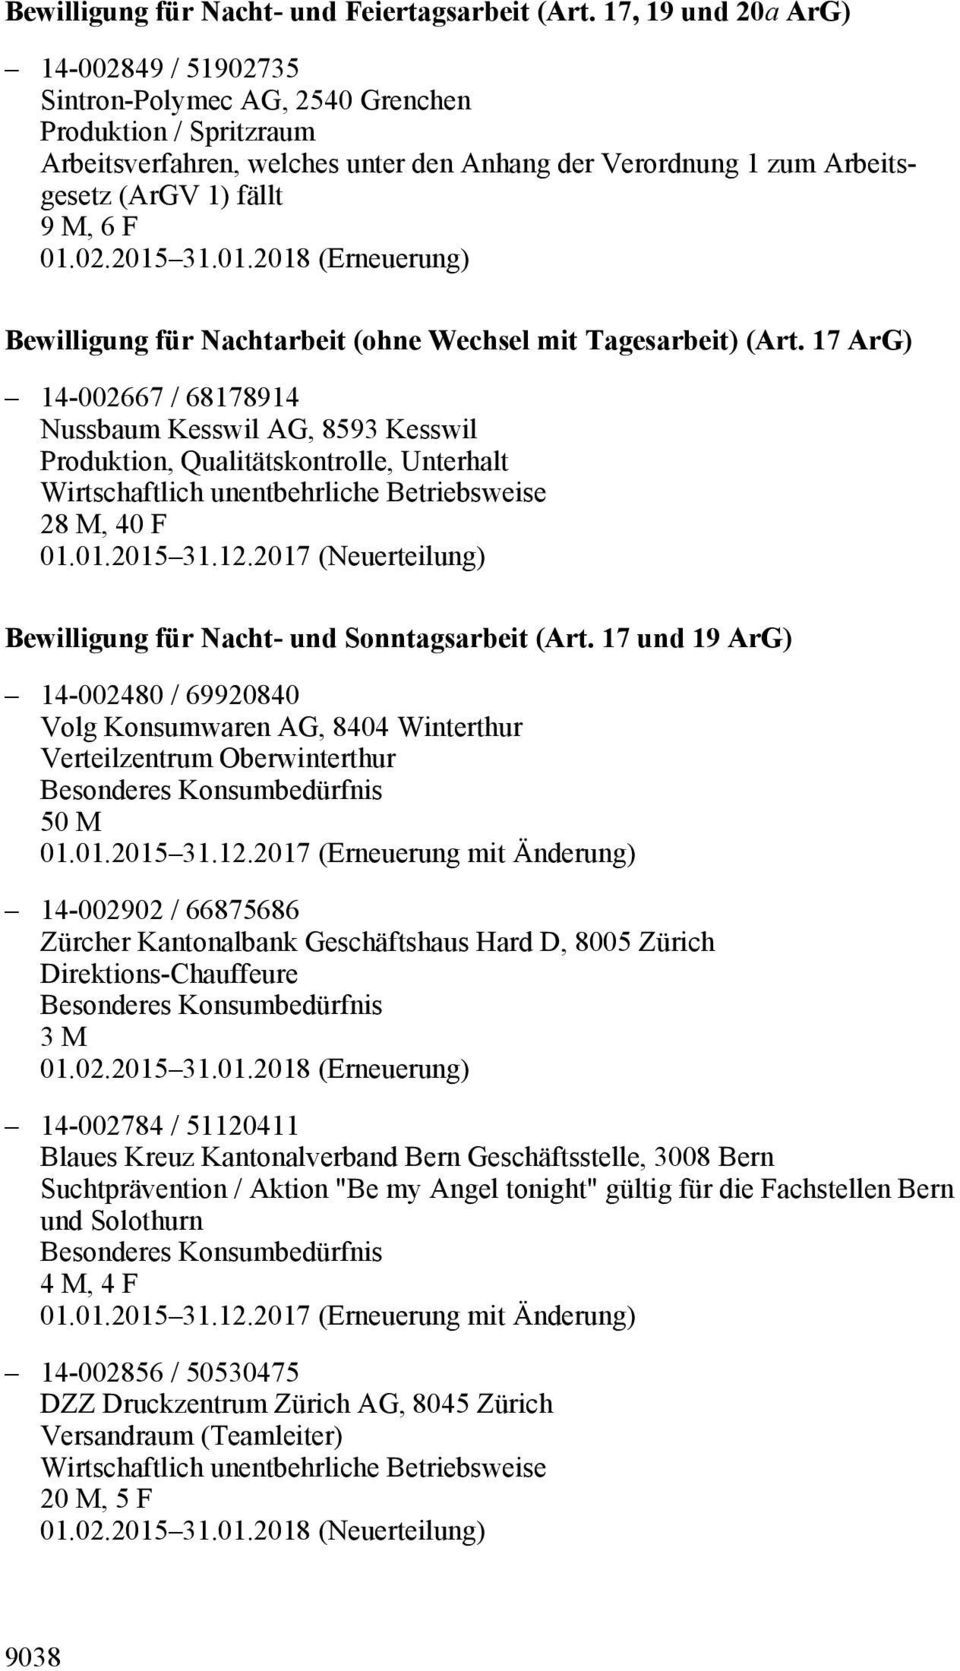 F Bewilligung für Nachtarbeit (ohne Wechsel mit Tagesarbeit) (Art. 17 ArG) 14-002667 / 68178914 Nussbaum Kesswil AG, 8593 Kesswil Produktion, Qualitätskontrolle, Unterhalt 28 M, 40 F 01.01.2015 31.12.